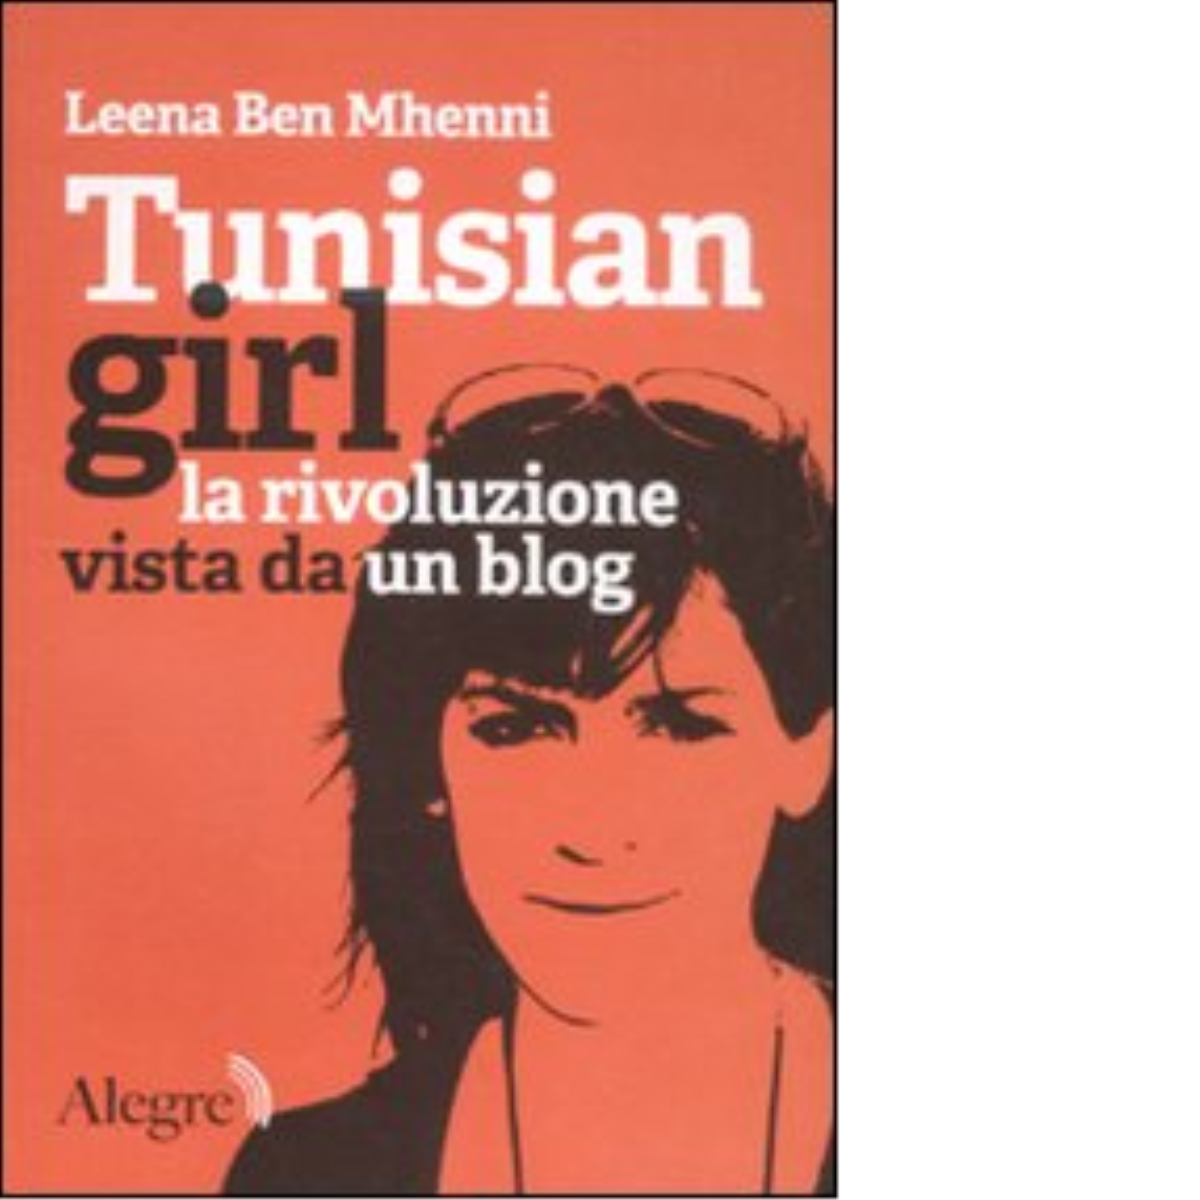 TUNISIAN GIRL. LA RIVOLUZIONE VISTA DA UN BLOG di LEENA BEN MHENNI - 2012